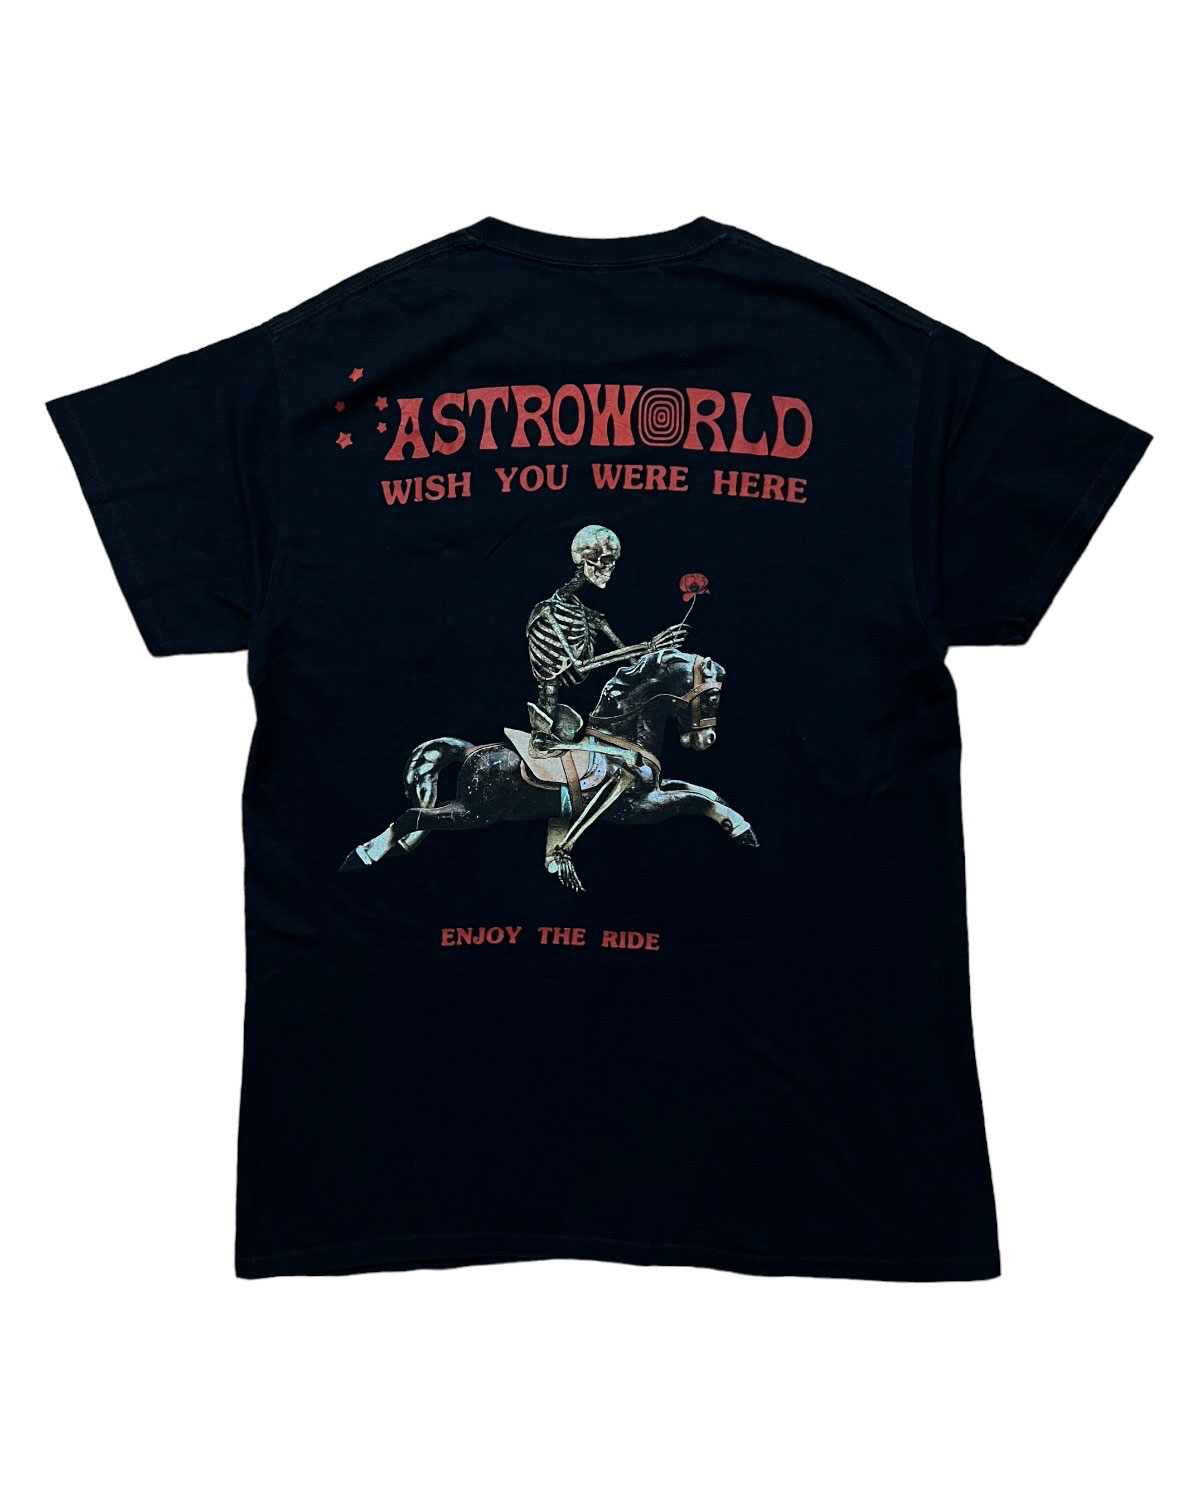 Travis scott astroworld tour tee